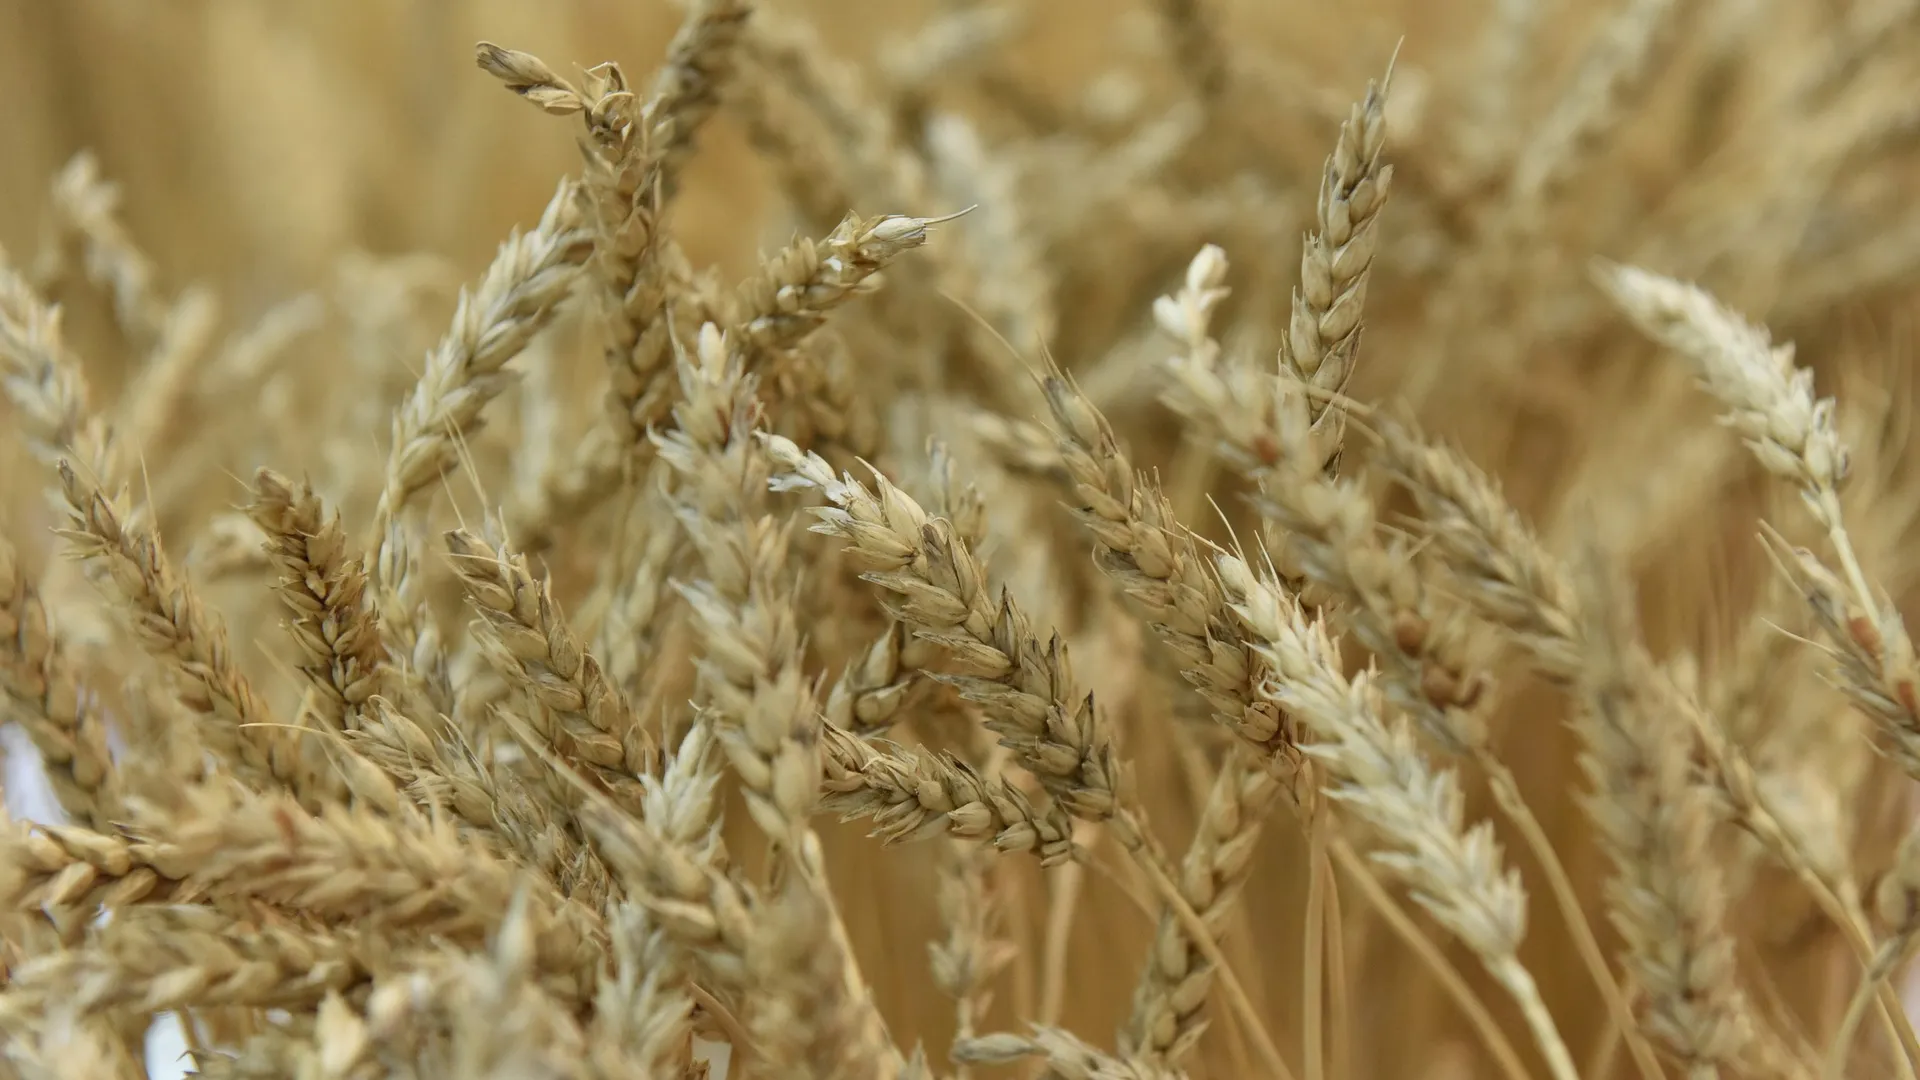 Глава Зернового союза предсказал падение экспорта пшеницы из РФ до 40 млн тонн